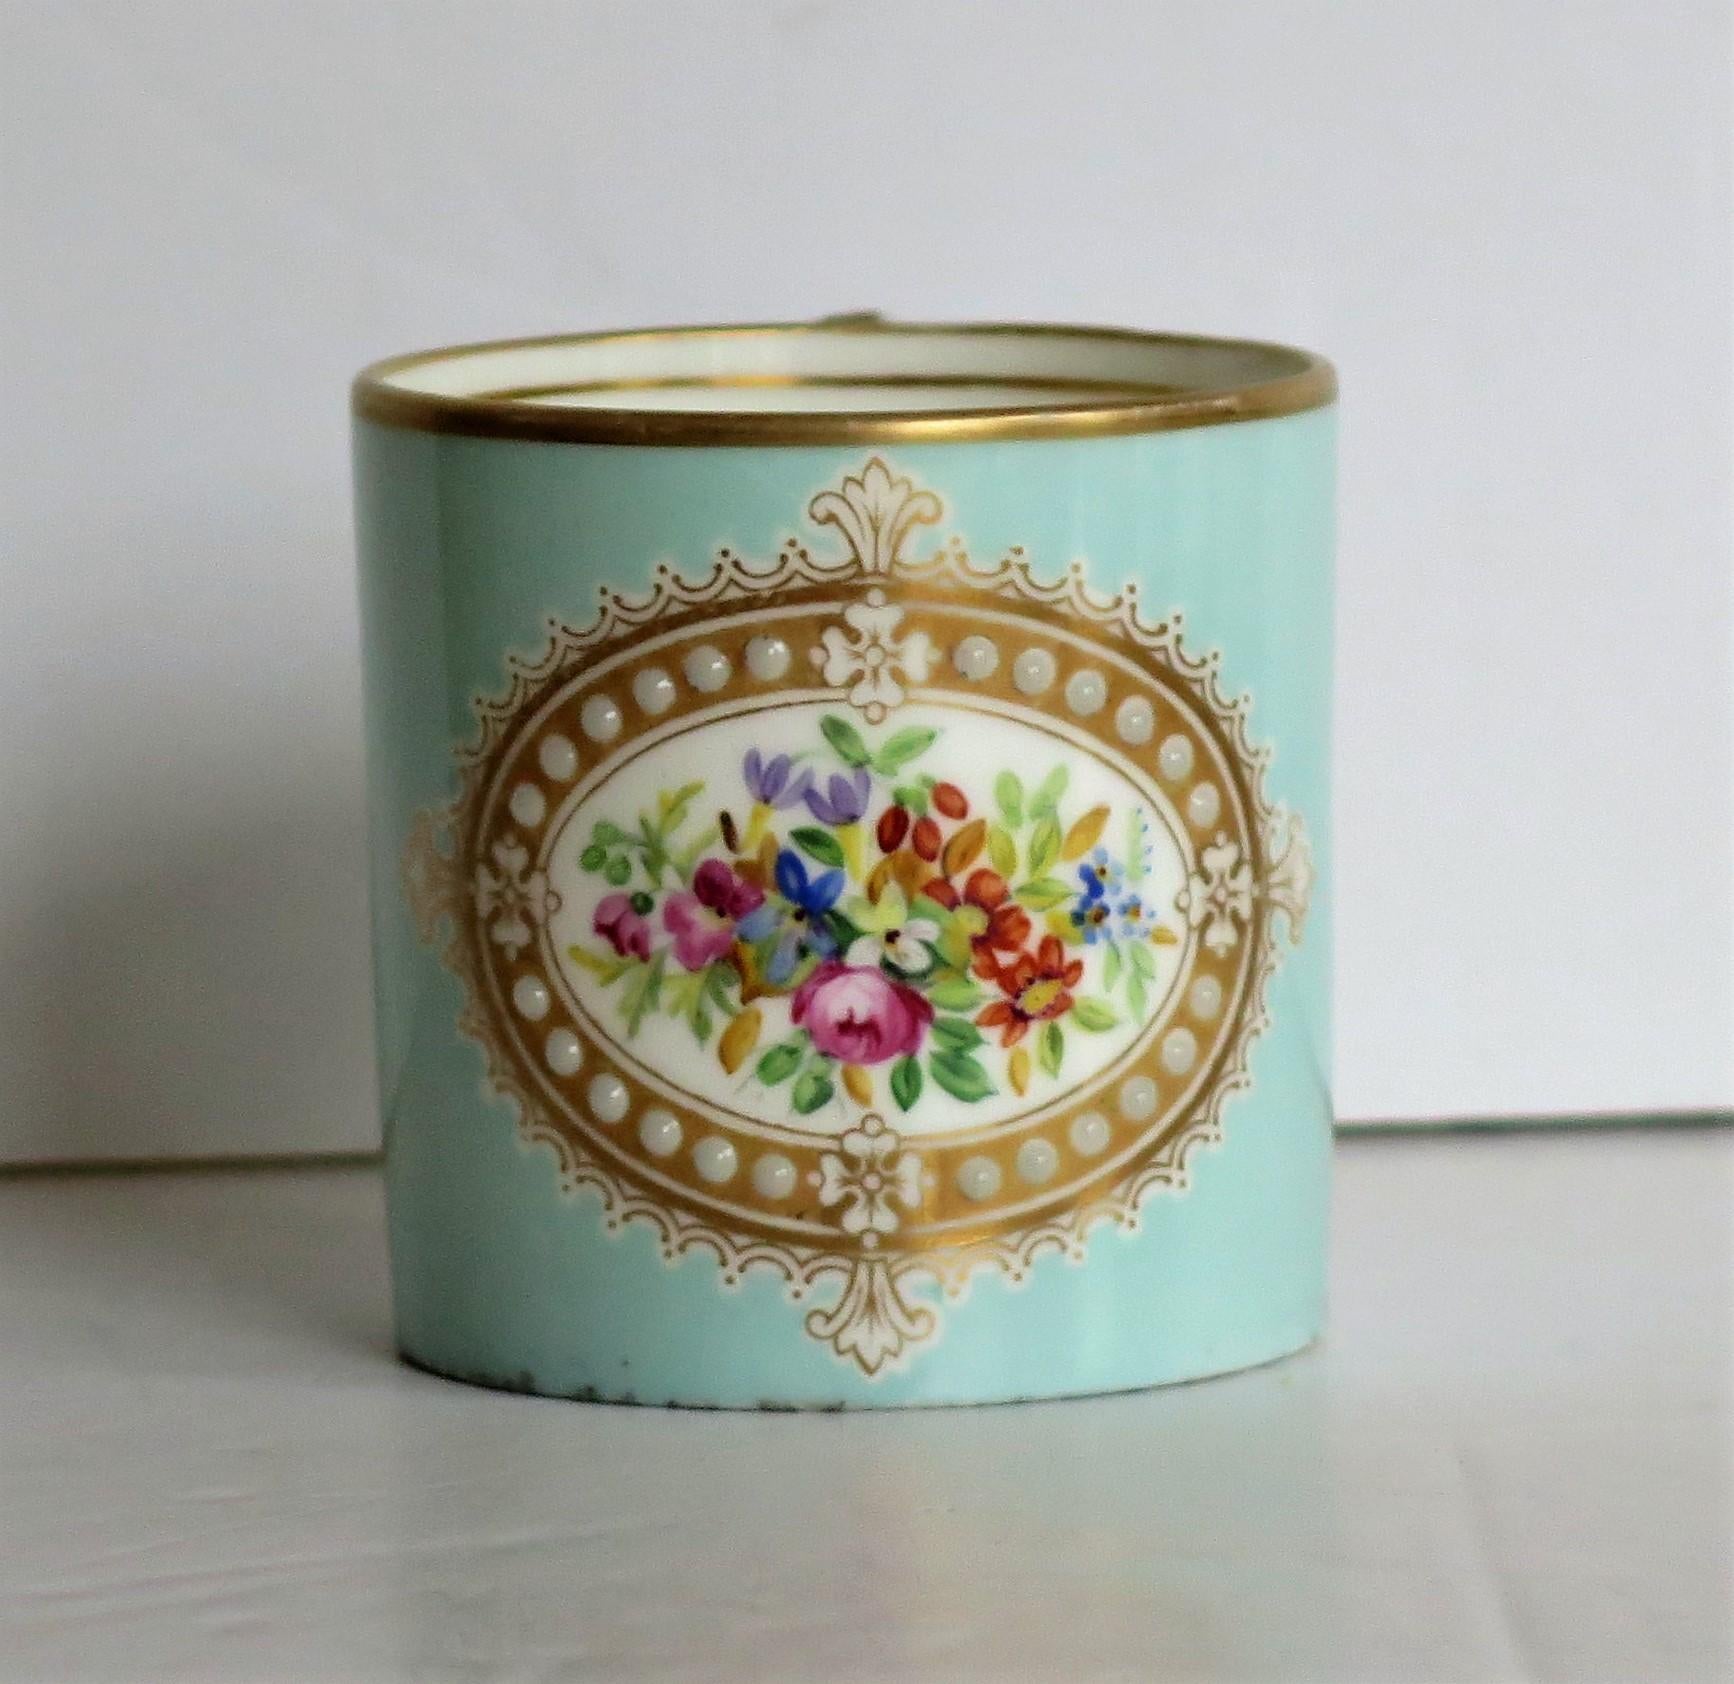 Es handelt sich um eine sehr schöne, mit Juwelen verzierte, handbemalte und vergoldete Kaffeekanne im französischen Sèvres-Stil, die möglicherweise aus dem frühen 19. Jahrhundert stammt, etwa aus dem Jahr 1810.

Diese Kaffeedose ist gut getöpfert